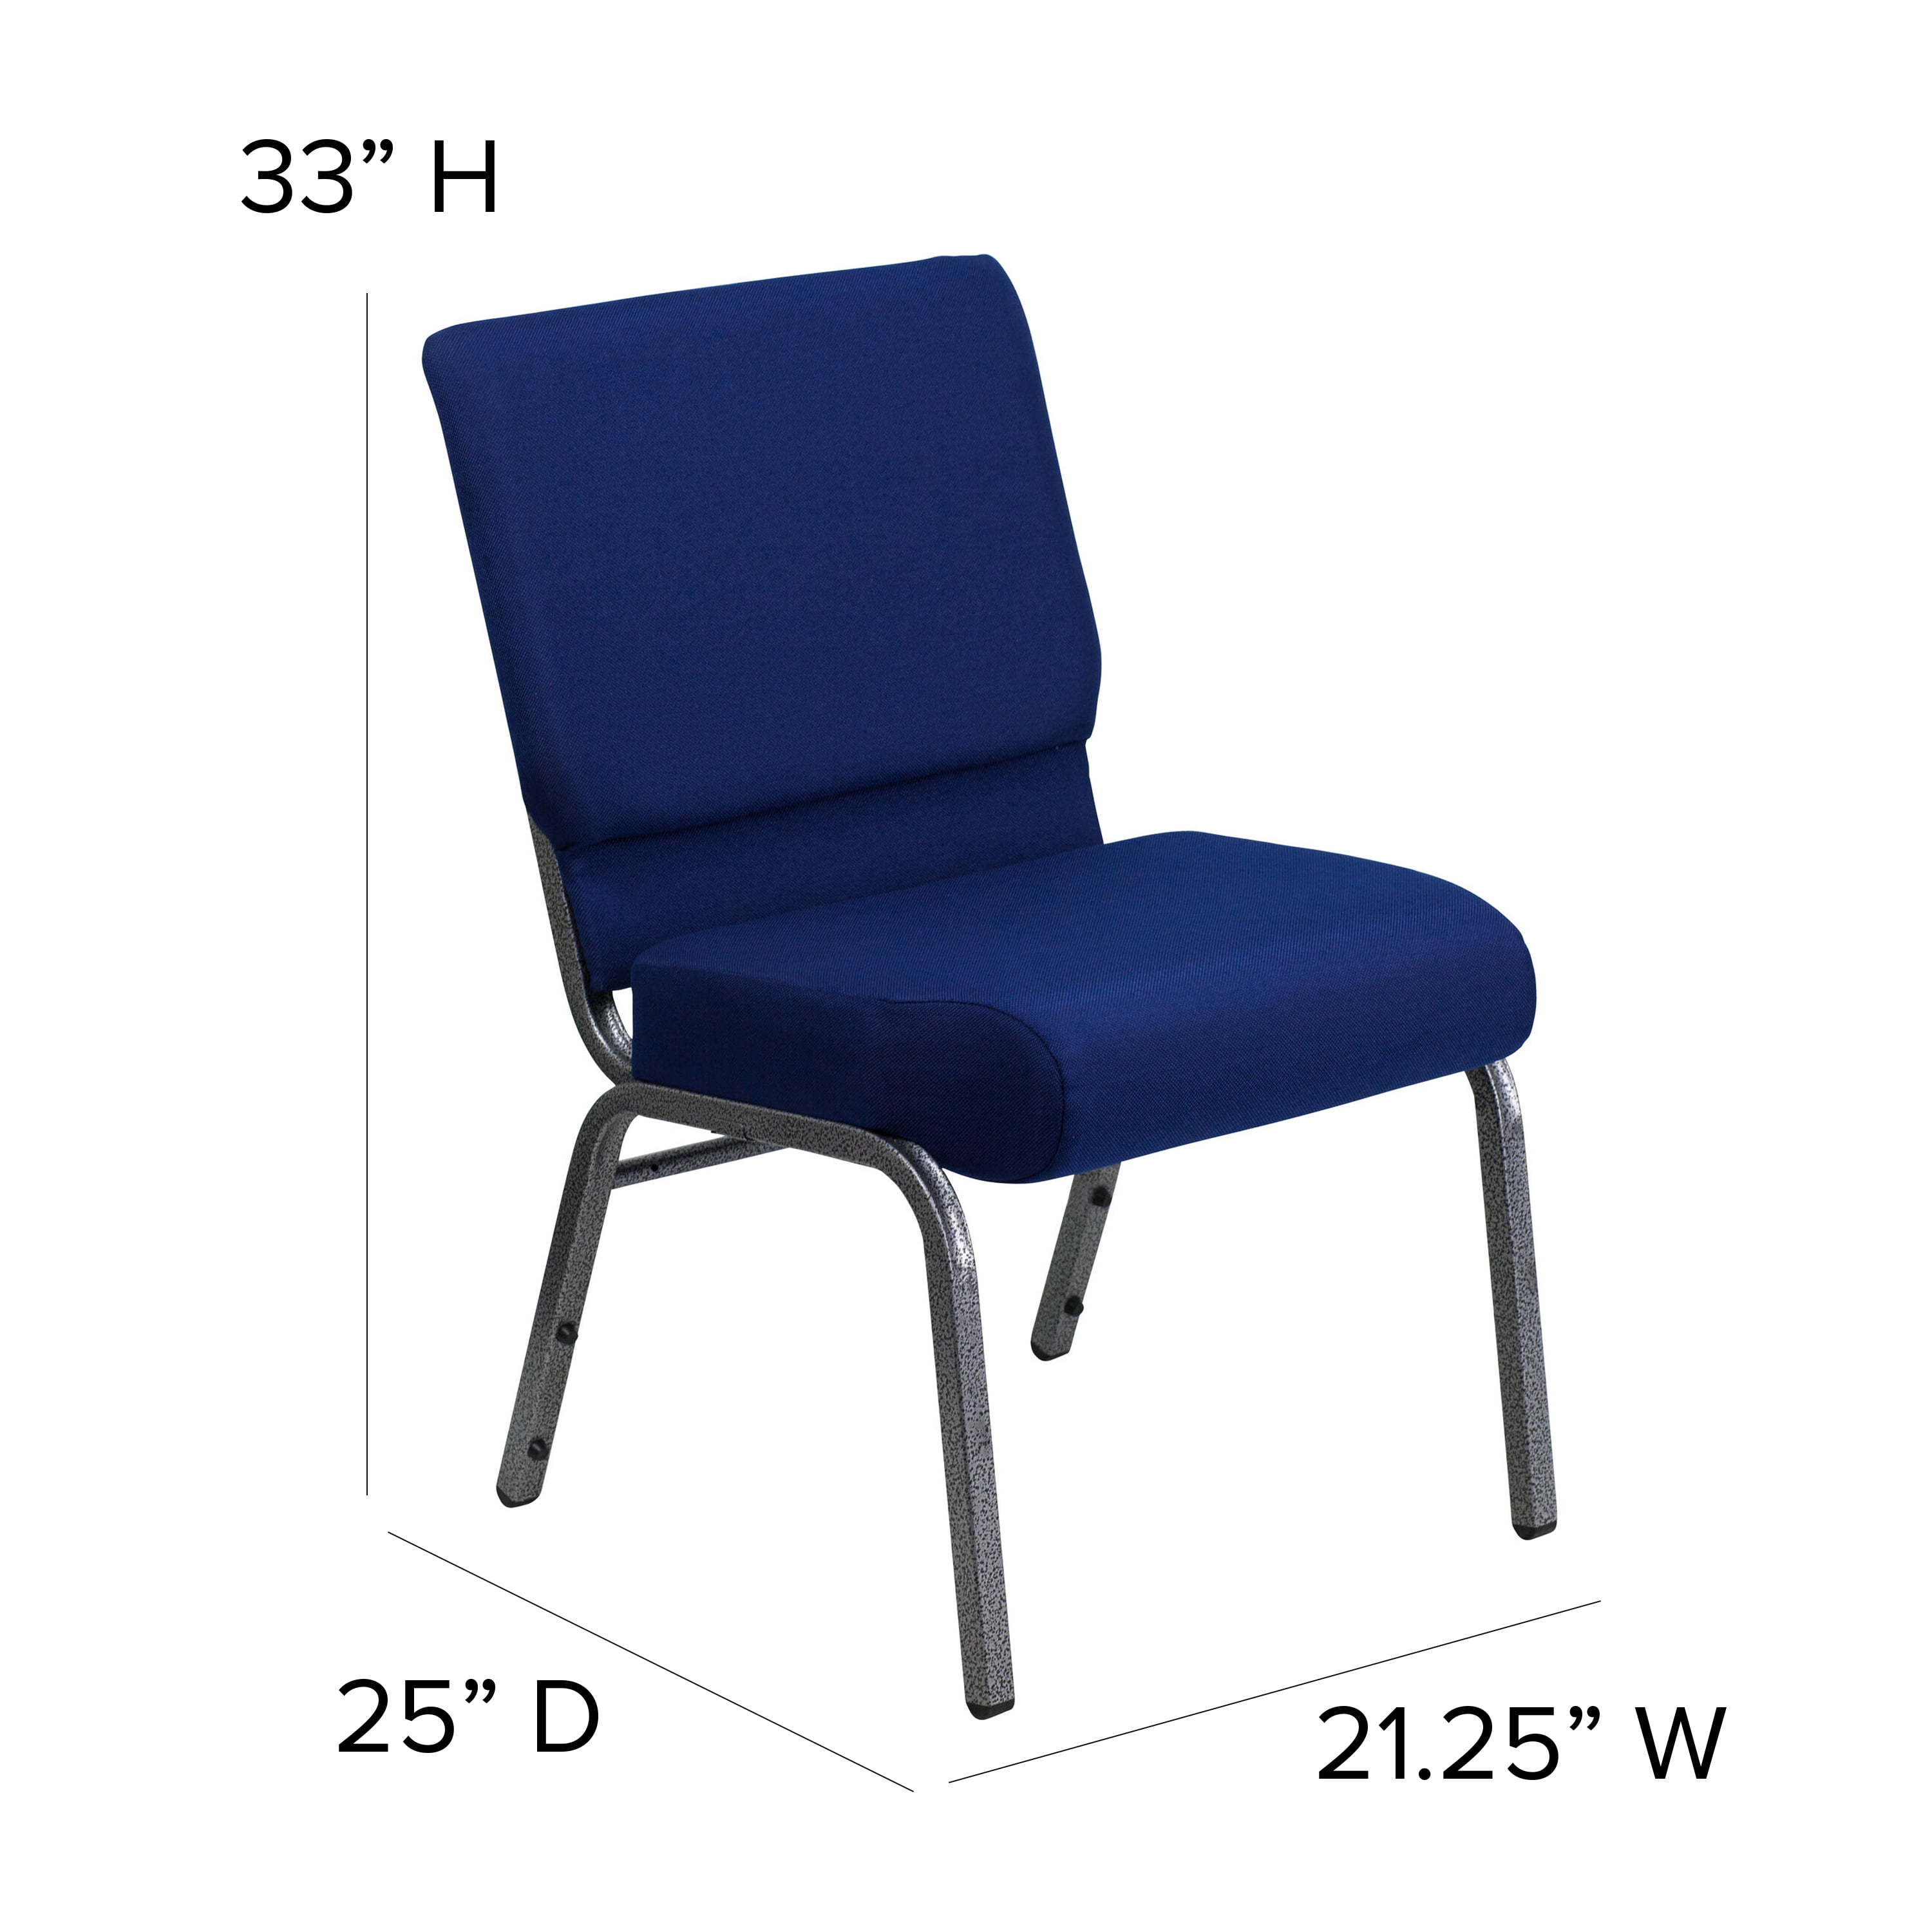 Chairs #stitchfinds #stitch #burlington #fyp #stitchchair #chairs